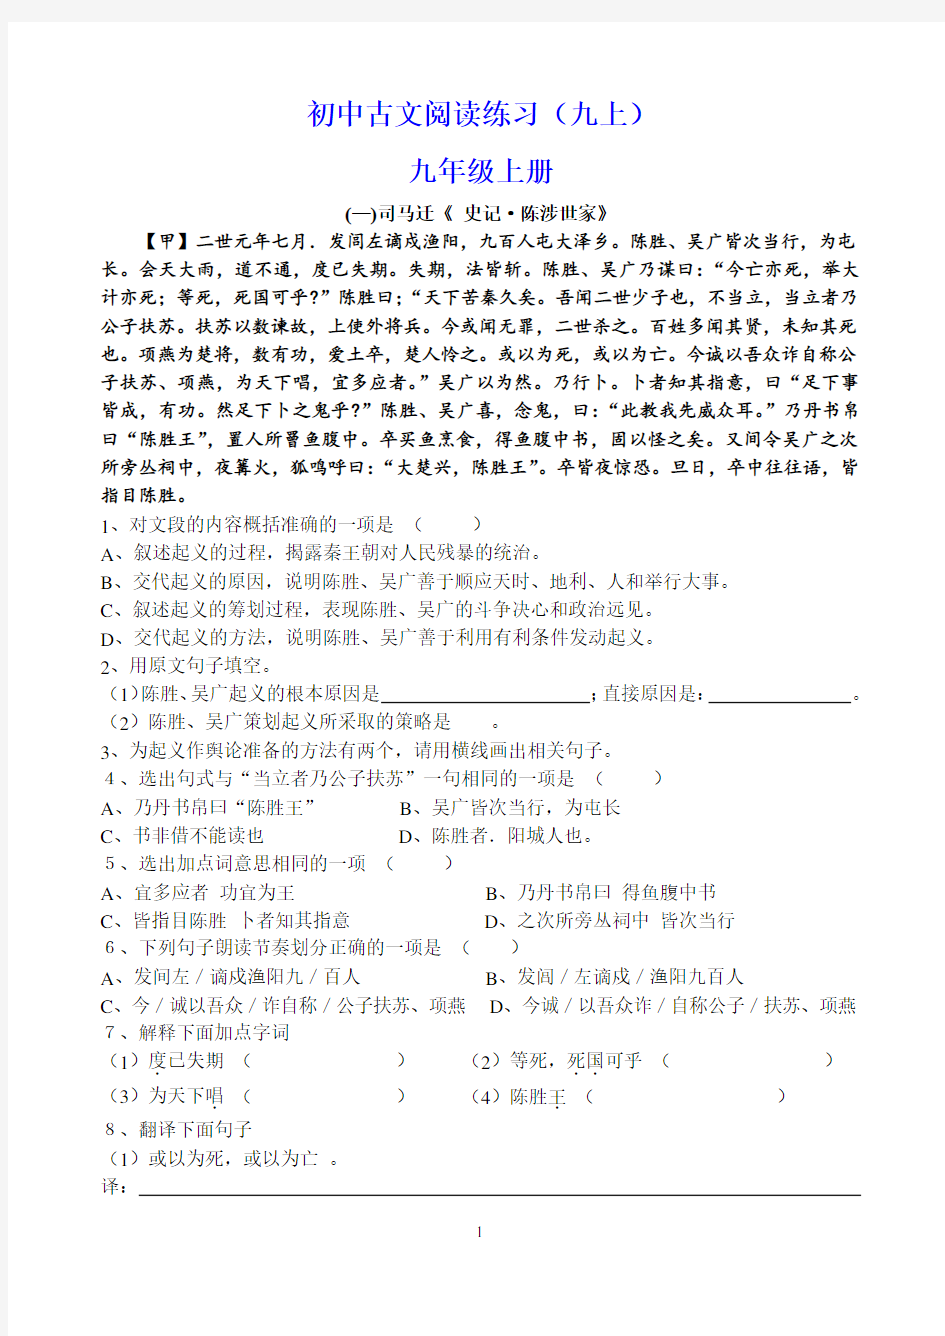 人教版初中语文古文阅读练习及答案((5)